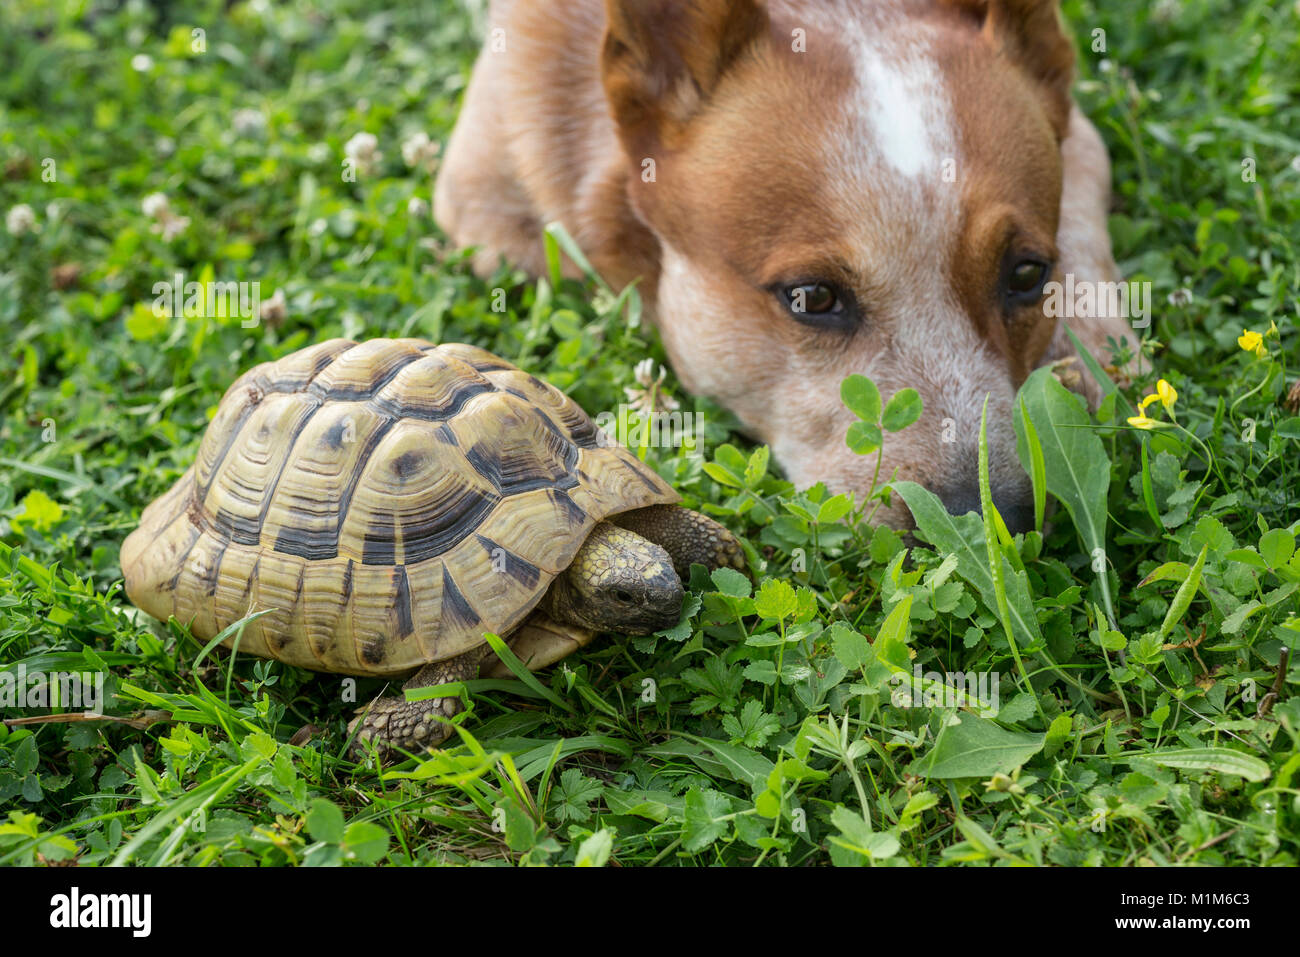 Amicizia animale: Miniature pinscher che giace accanto al Hermanns tartaruga (Testudo hermanni) in erba. Germania Foto Stock